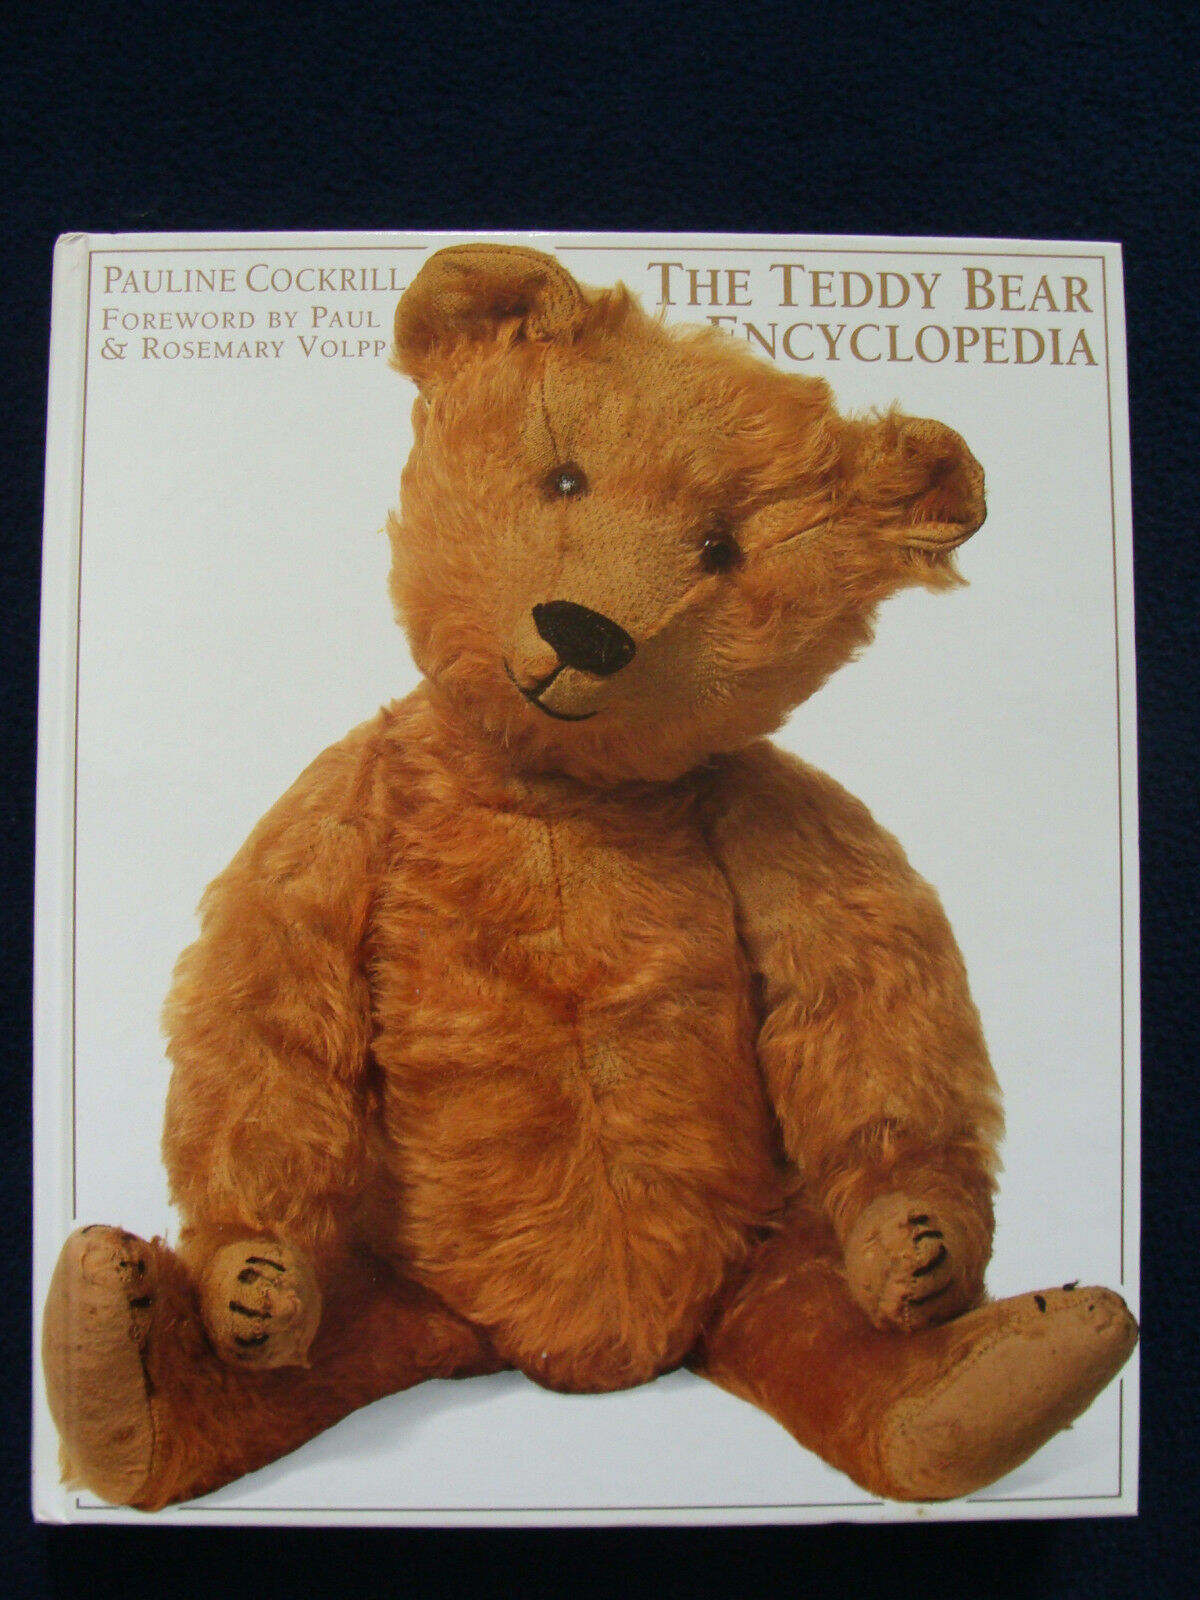 The Teddy Bear Encyclopedia - Pauline Cockrill - 1993